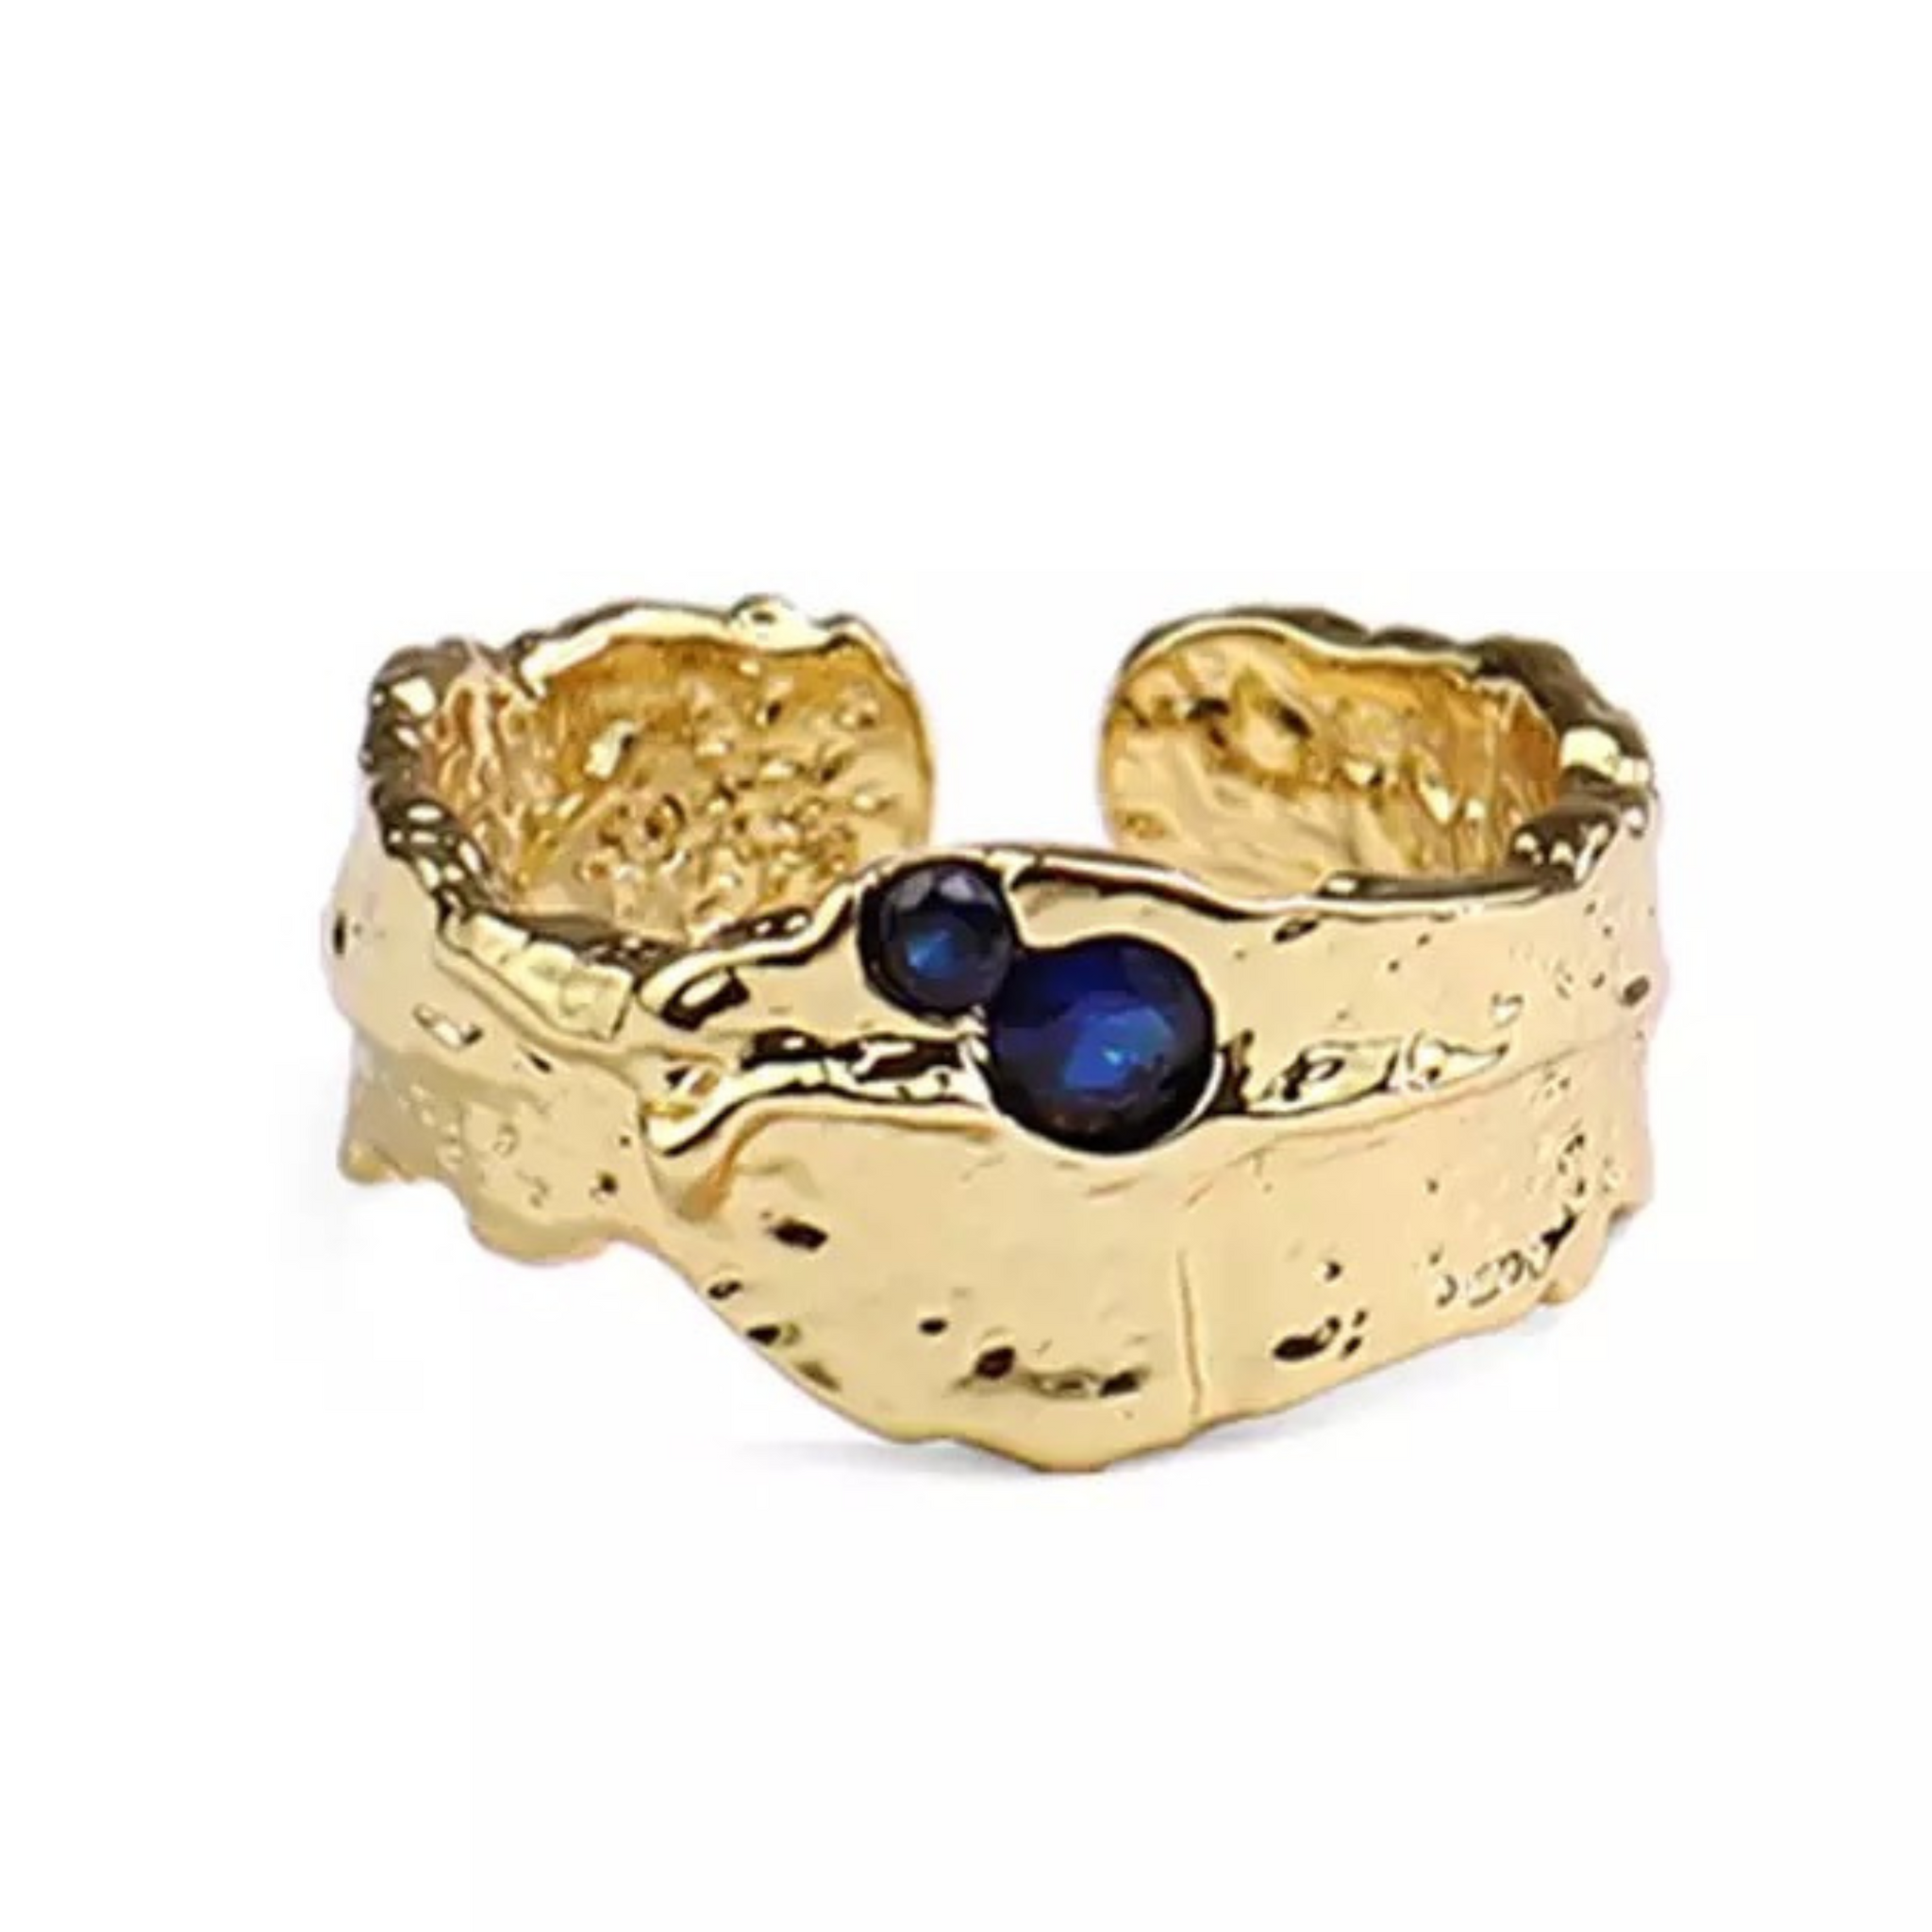 Avelina ring i guld med smukke mørkeblå sten.  Denne smukke ring, er til dig som elsker, at spice dit look op med unikke og deltaljerede smykker. Ringen kan sammensættes med vores andre ringe, for et mere råt look eller bruges alene for et mere enkelt og feminint look.   Overfladen er legeret med 14 karat guld og er meget slidstærk.  Materiale: 70% S925 sterling sølv, 30% rustfri stål, guldbelagt, nikkelfri Størrelse: Justerbar